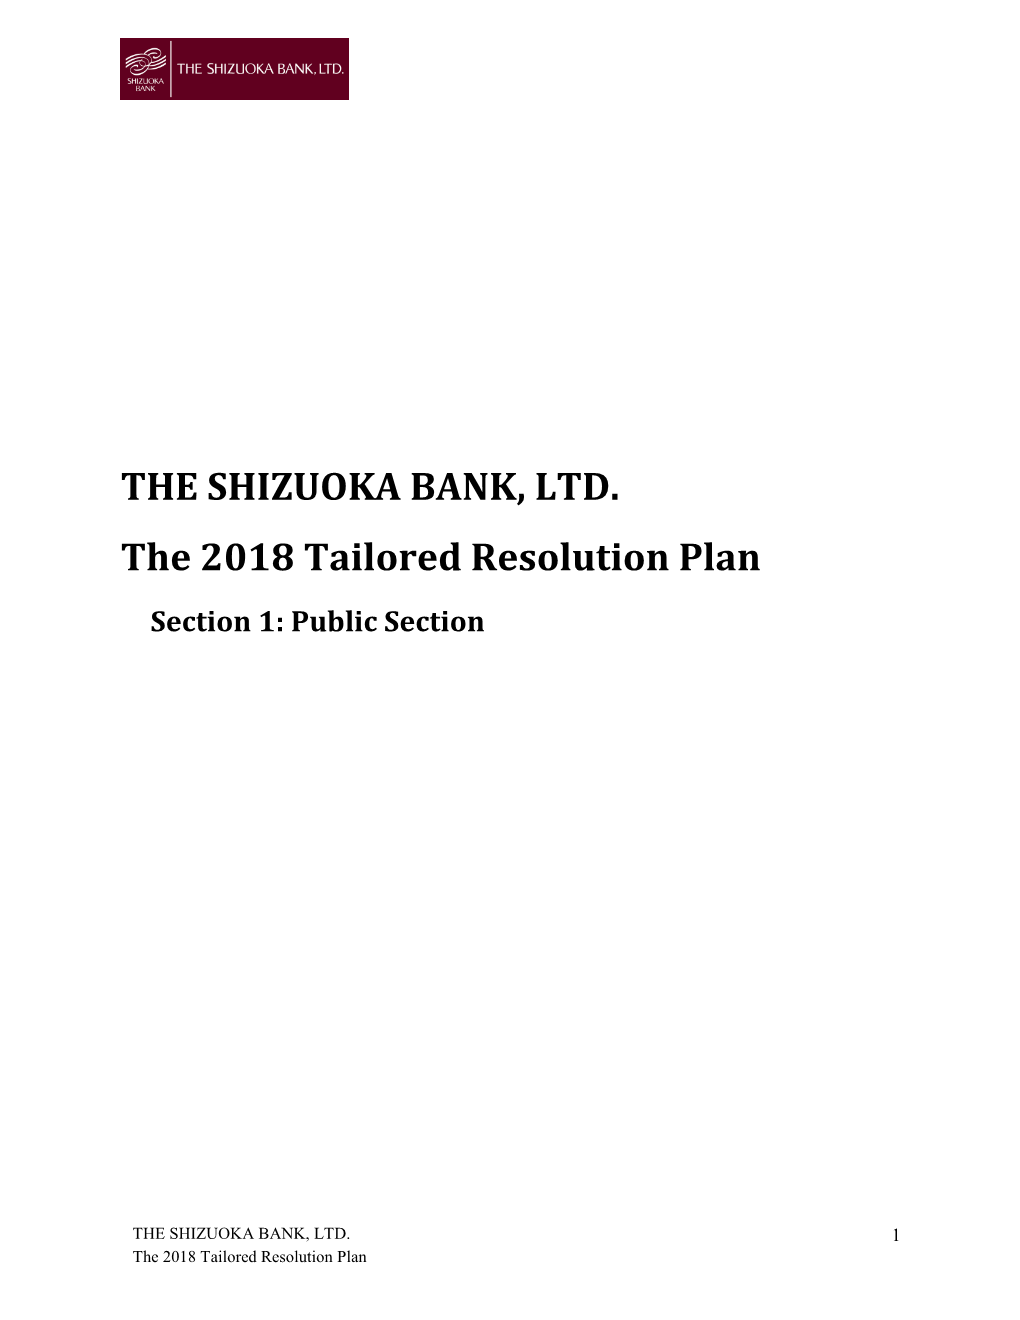 Shizuoka Bank, Ltd